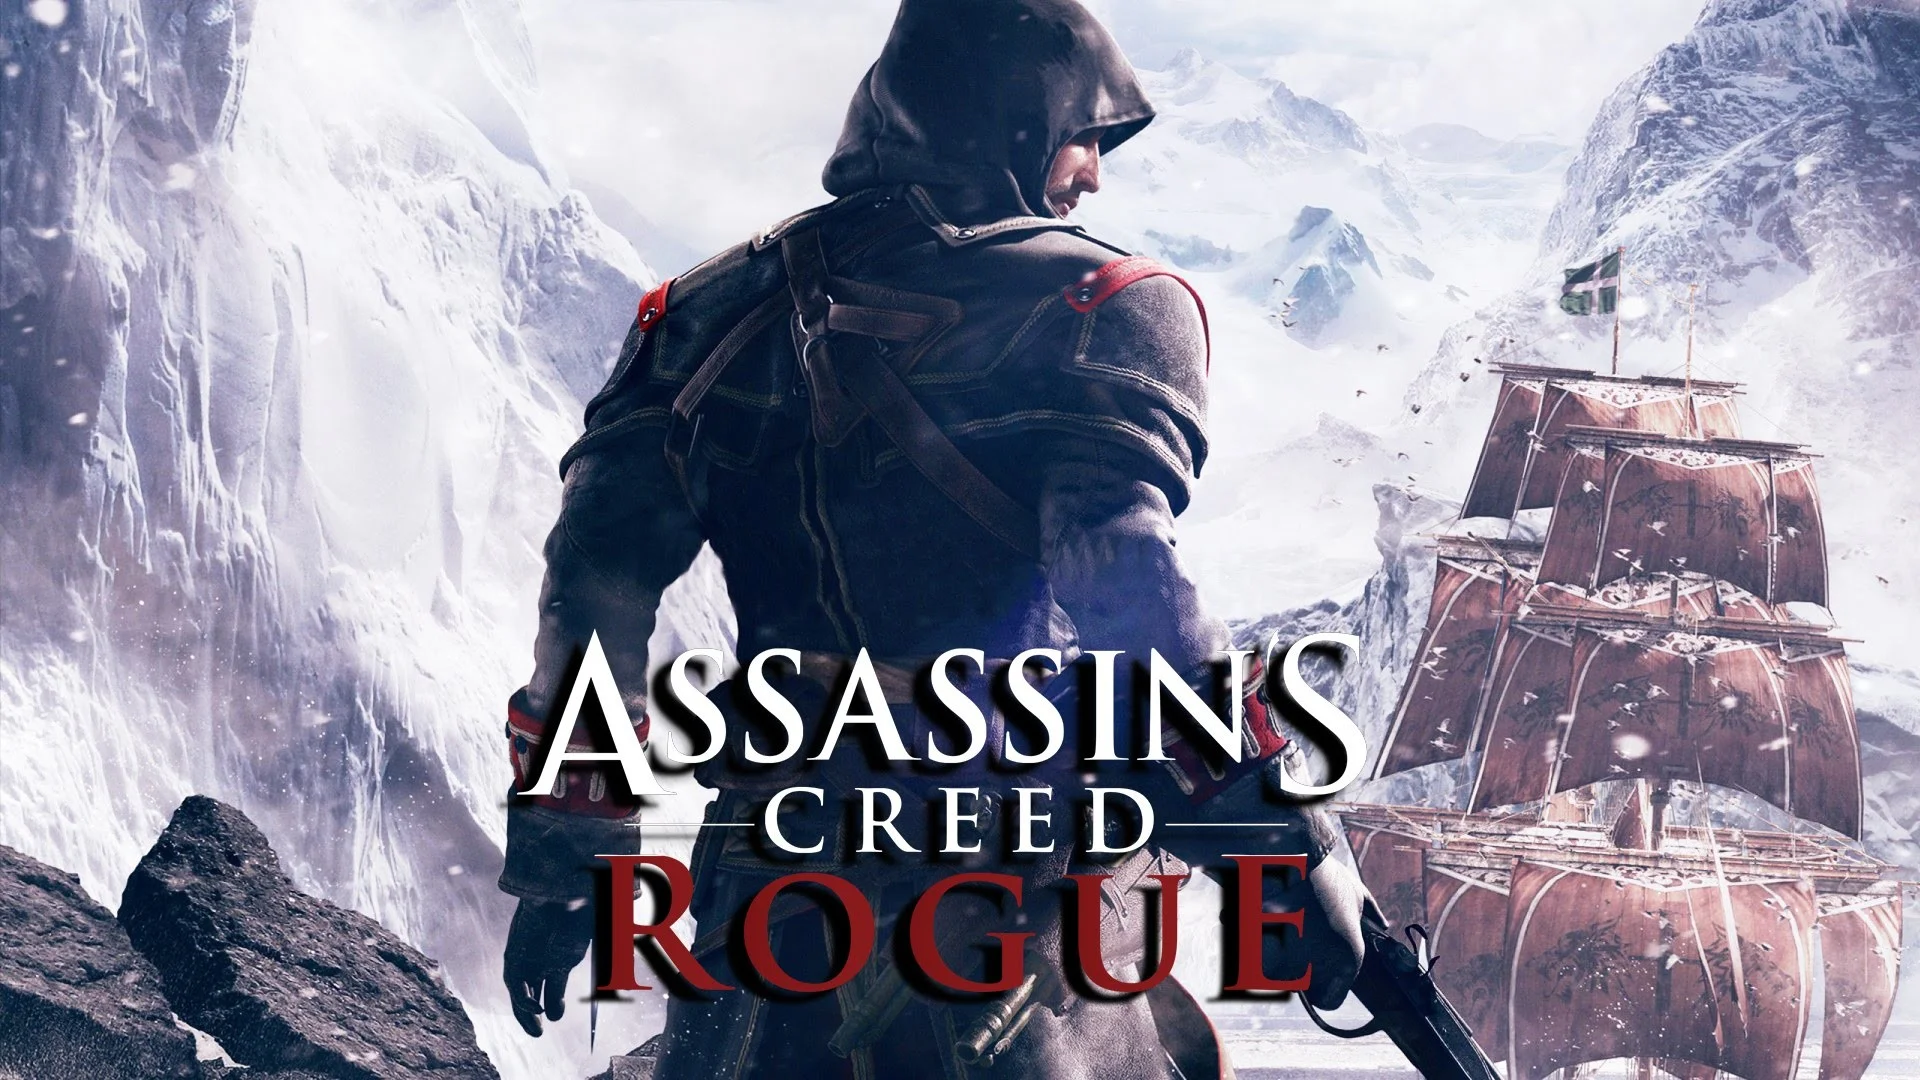 Nhấp vào hình ảnh liên quan để xem các cảnh phim hấp dẫn và đầy kịch tính của PC Assassin\'s Creed Rogue. Nếu bạn yêu thích series trò chơi của Ubisoft này, những cảnh phim này sẽ khiến bạn phải say mê và khám phá thêm nhiều điều mới mẻ.